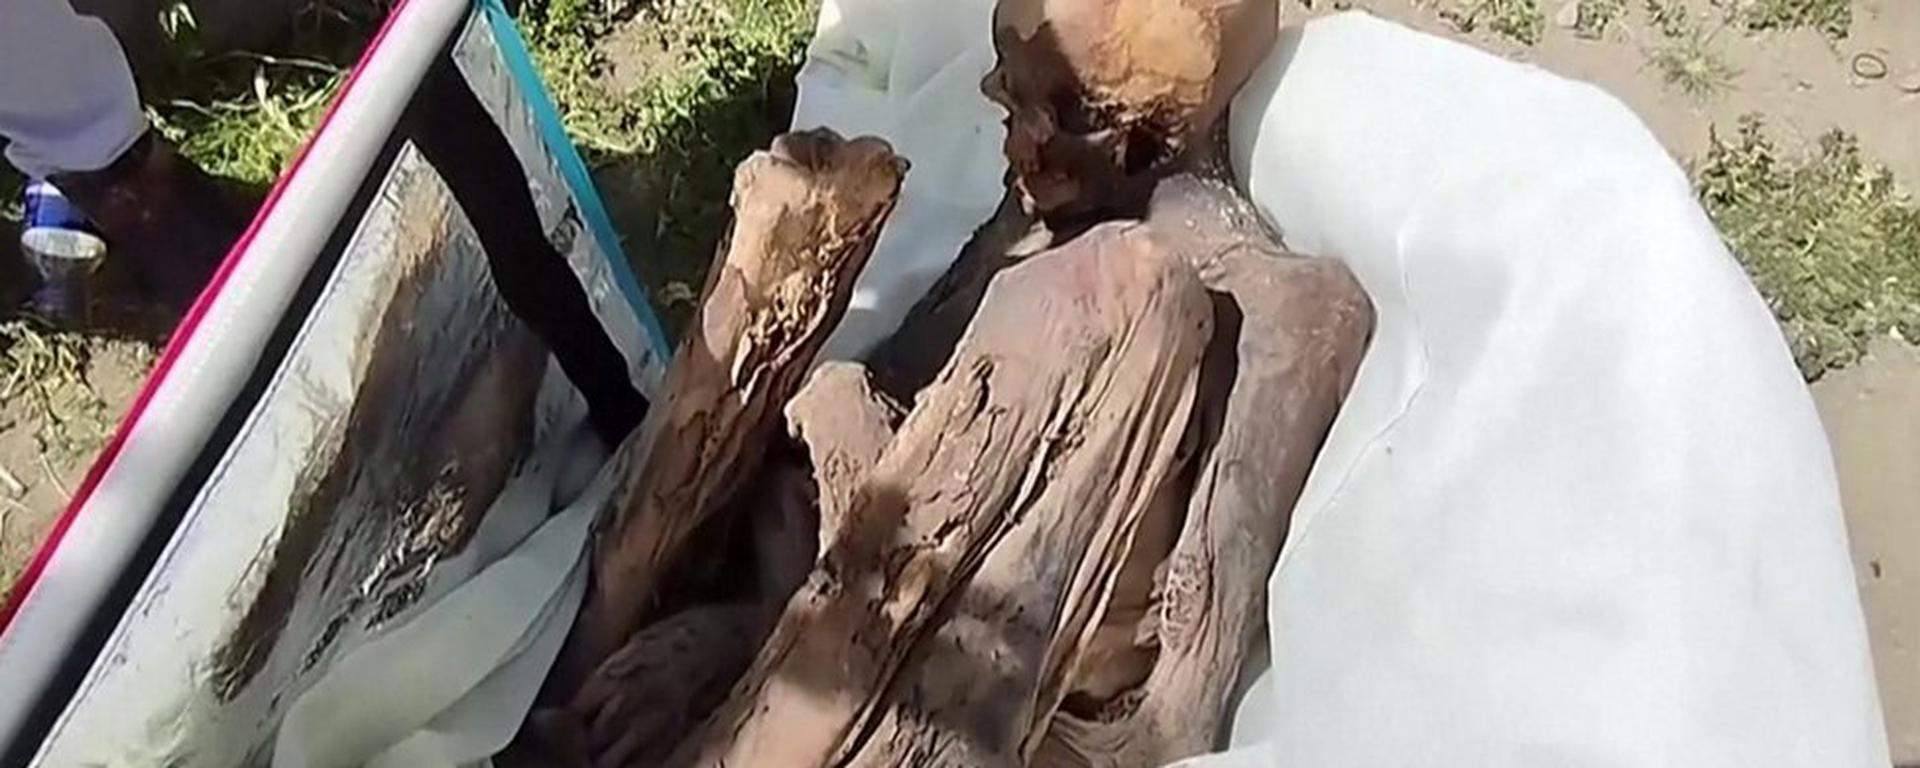 Más de 20 momias peruanas fueron sacadas ilegalmente del país en el mercado negro 